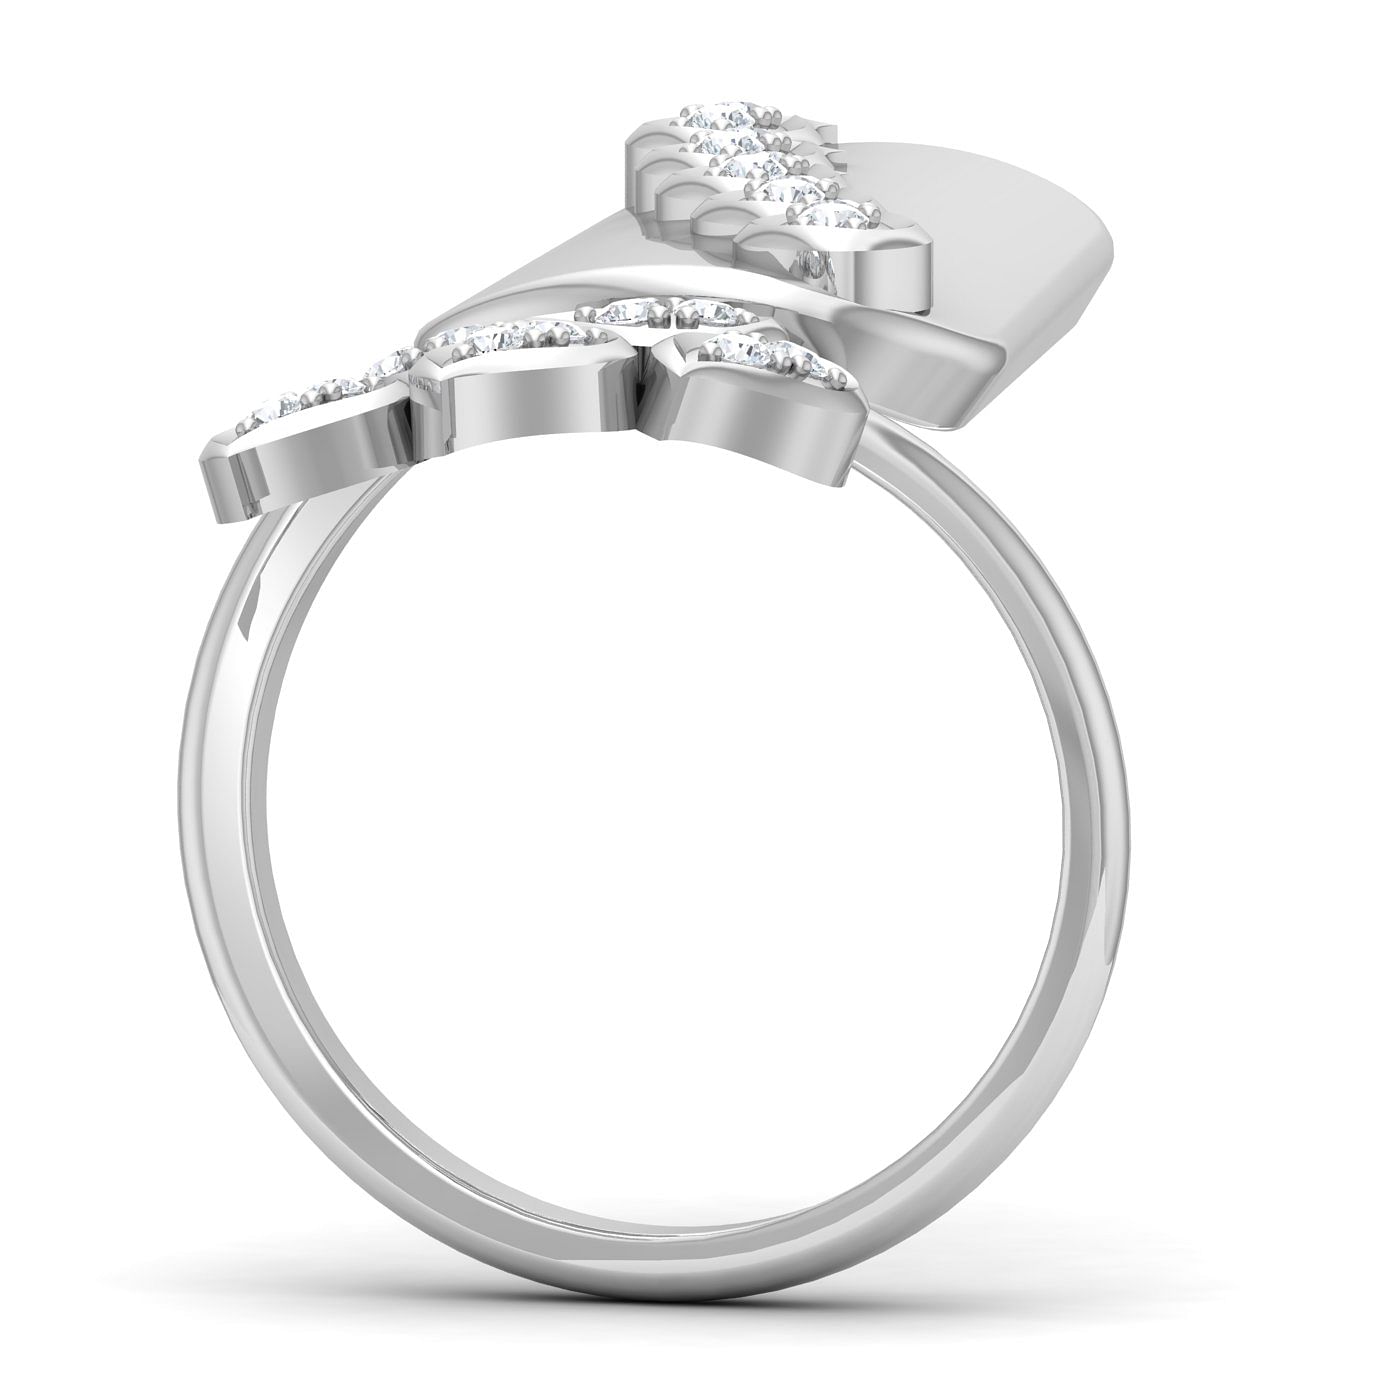 White Gold Fashionable Diamond Nail Ring